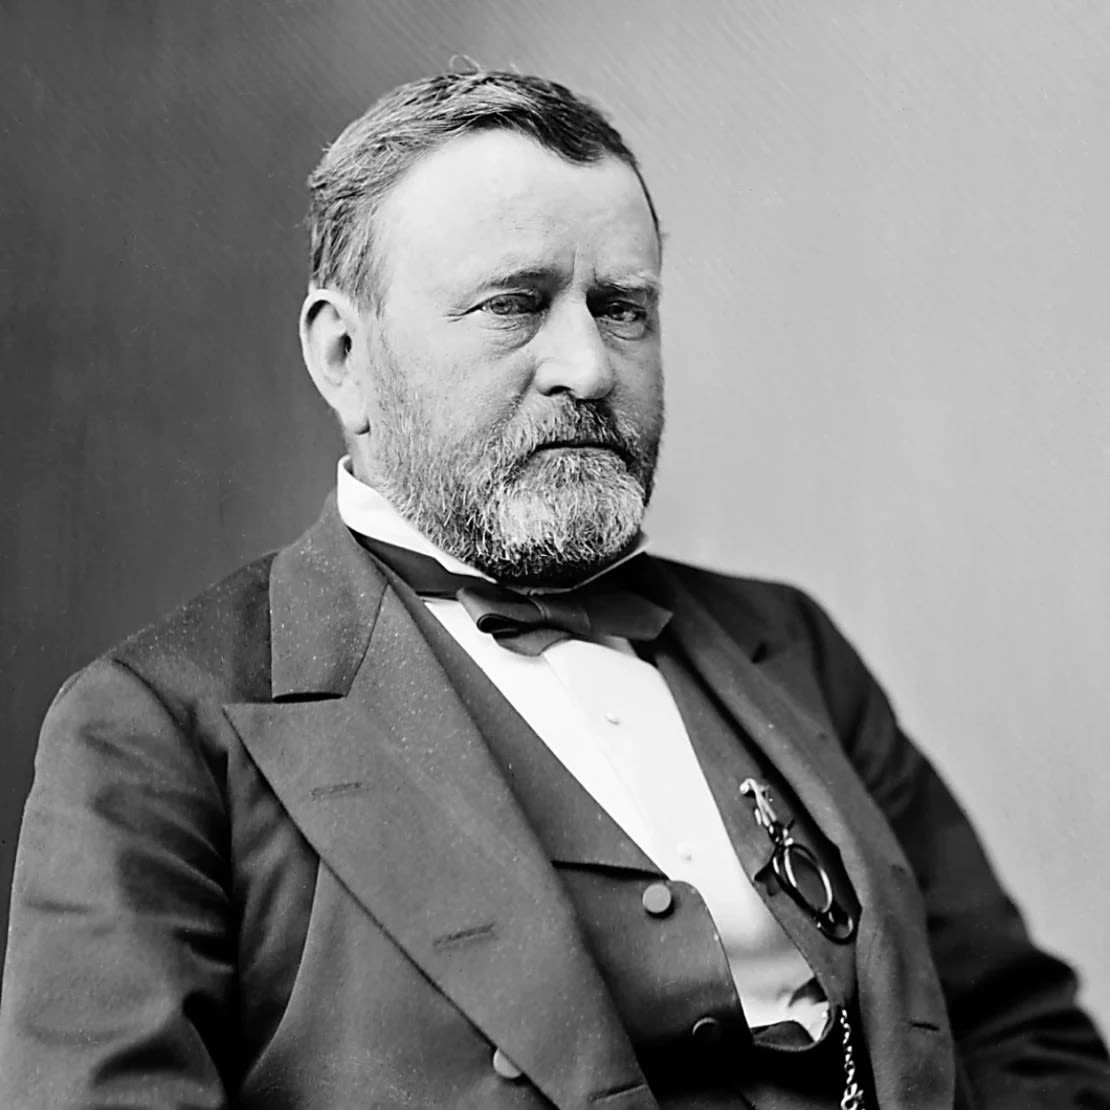 Ulysses S. Grant, decimoctavo presidente de los Estados Unidos de 1869 a 1877.